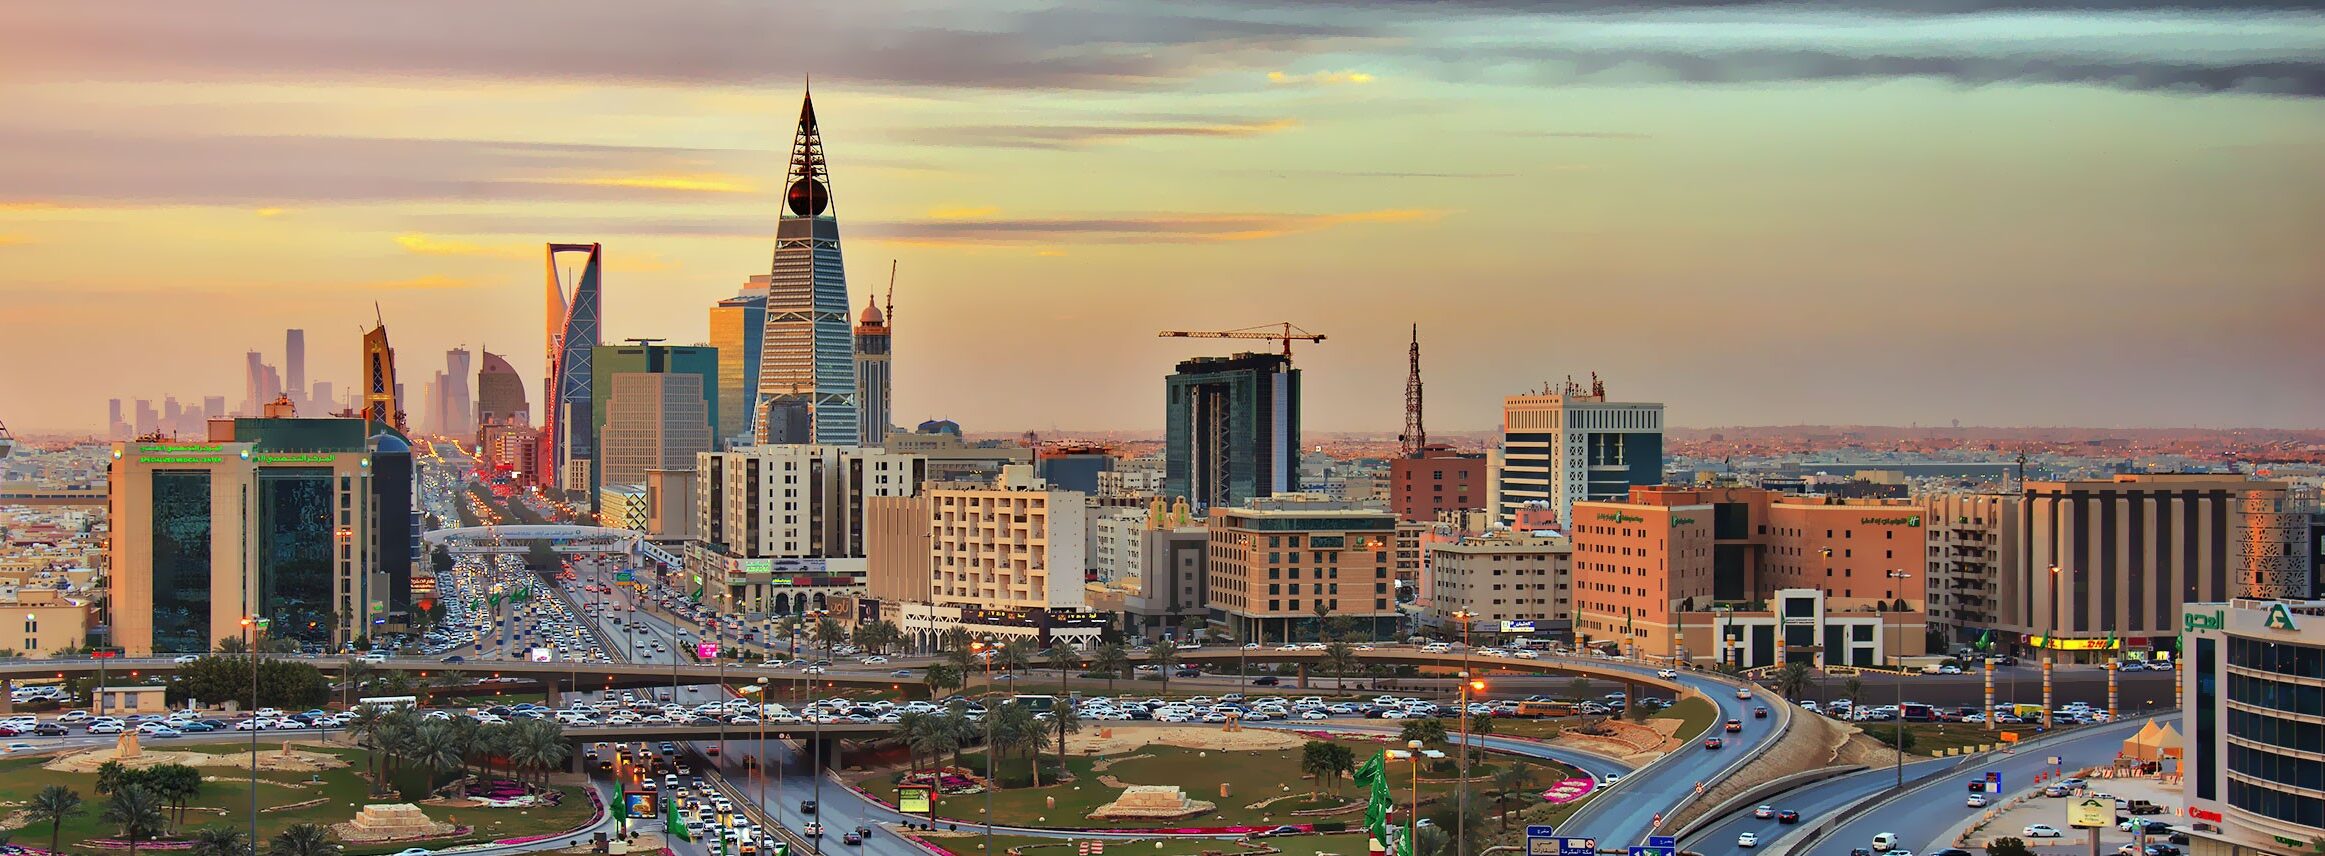 الملكية الرياض بالهيئة مدير الإدارة الإعلامية لمدينة سبب فصل